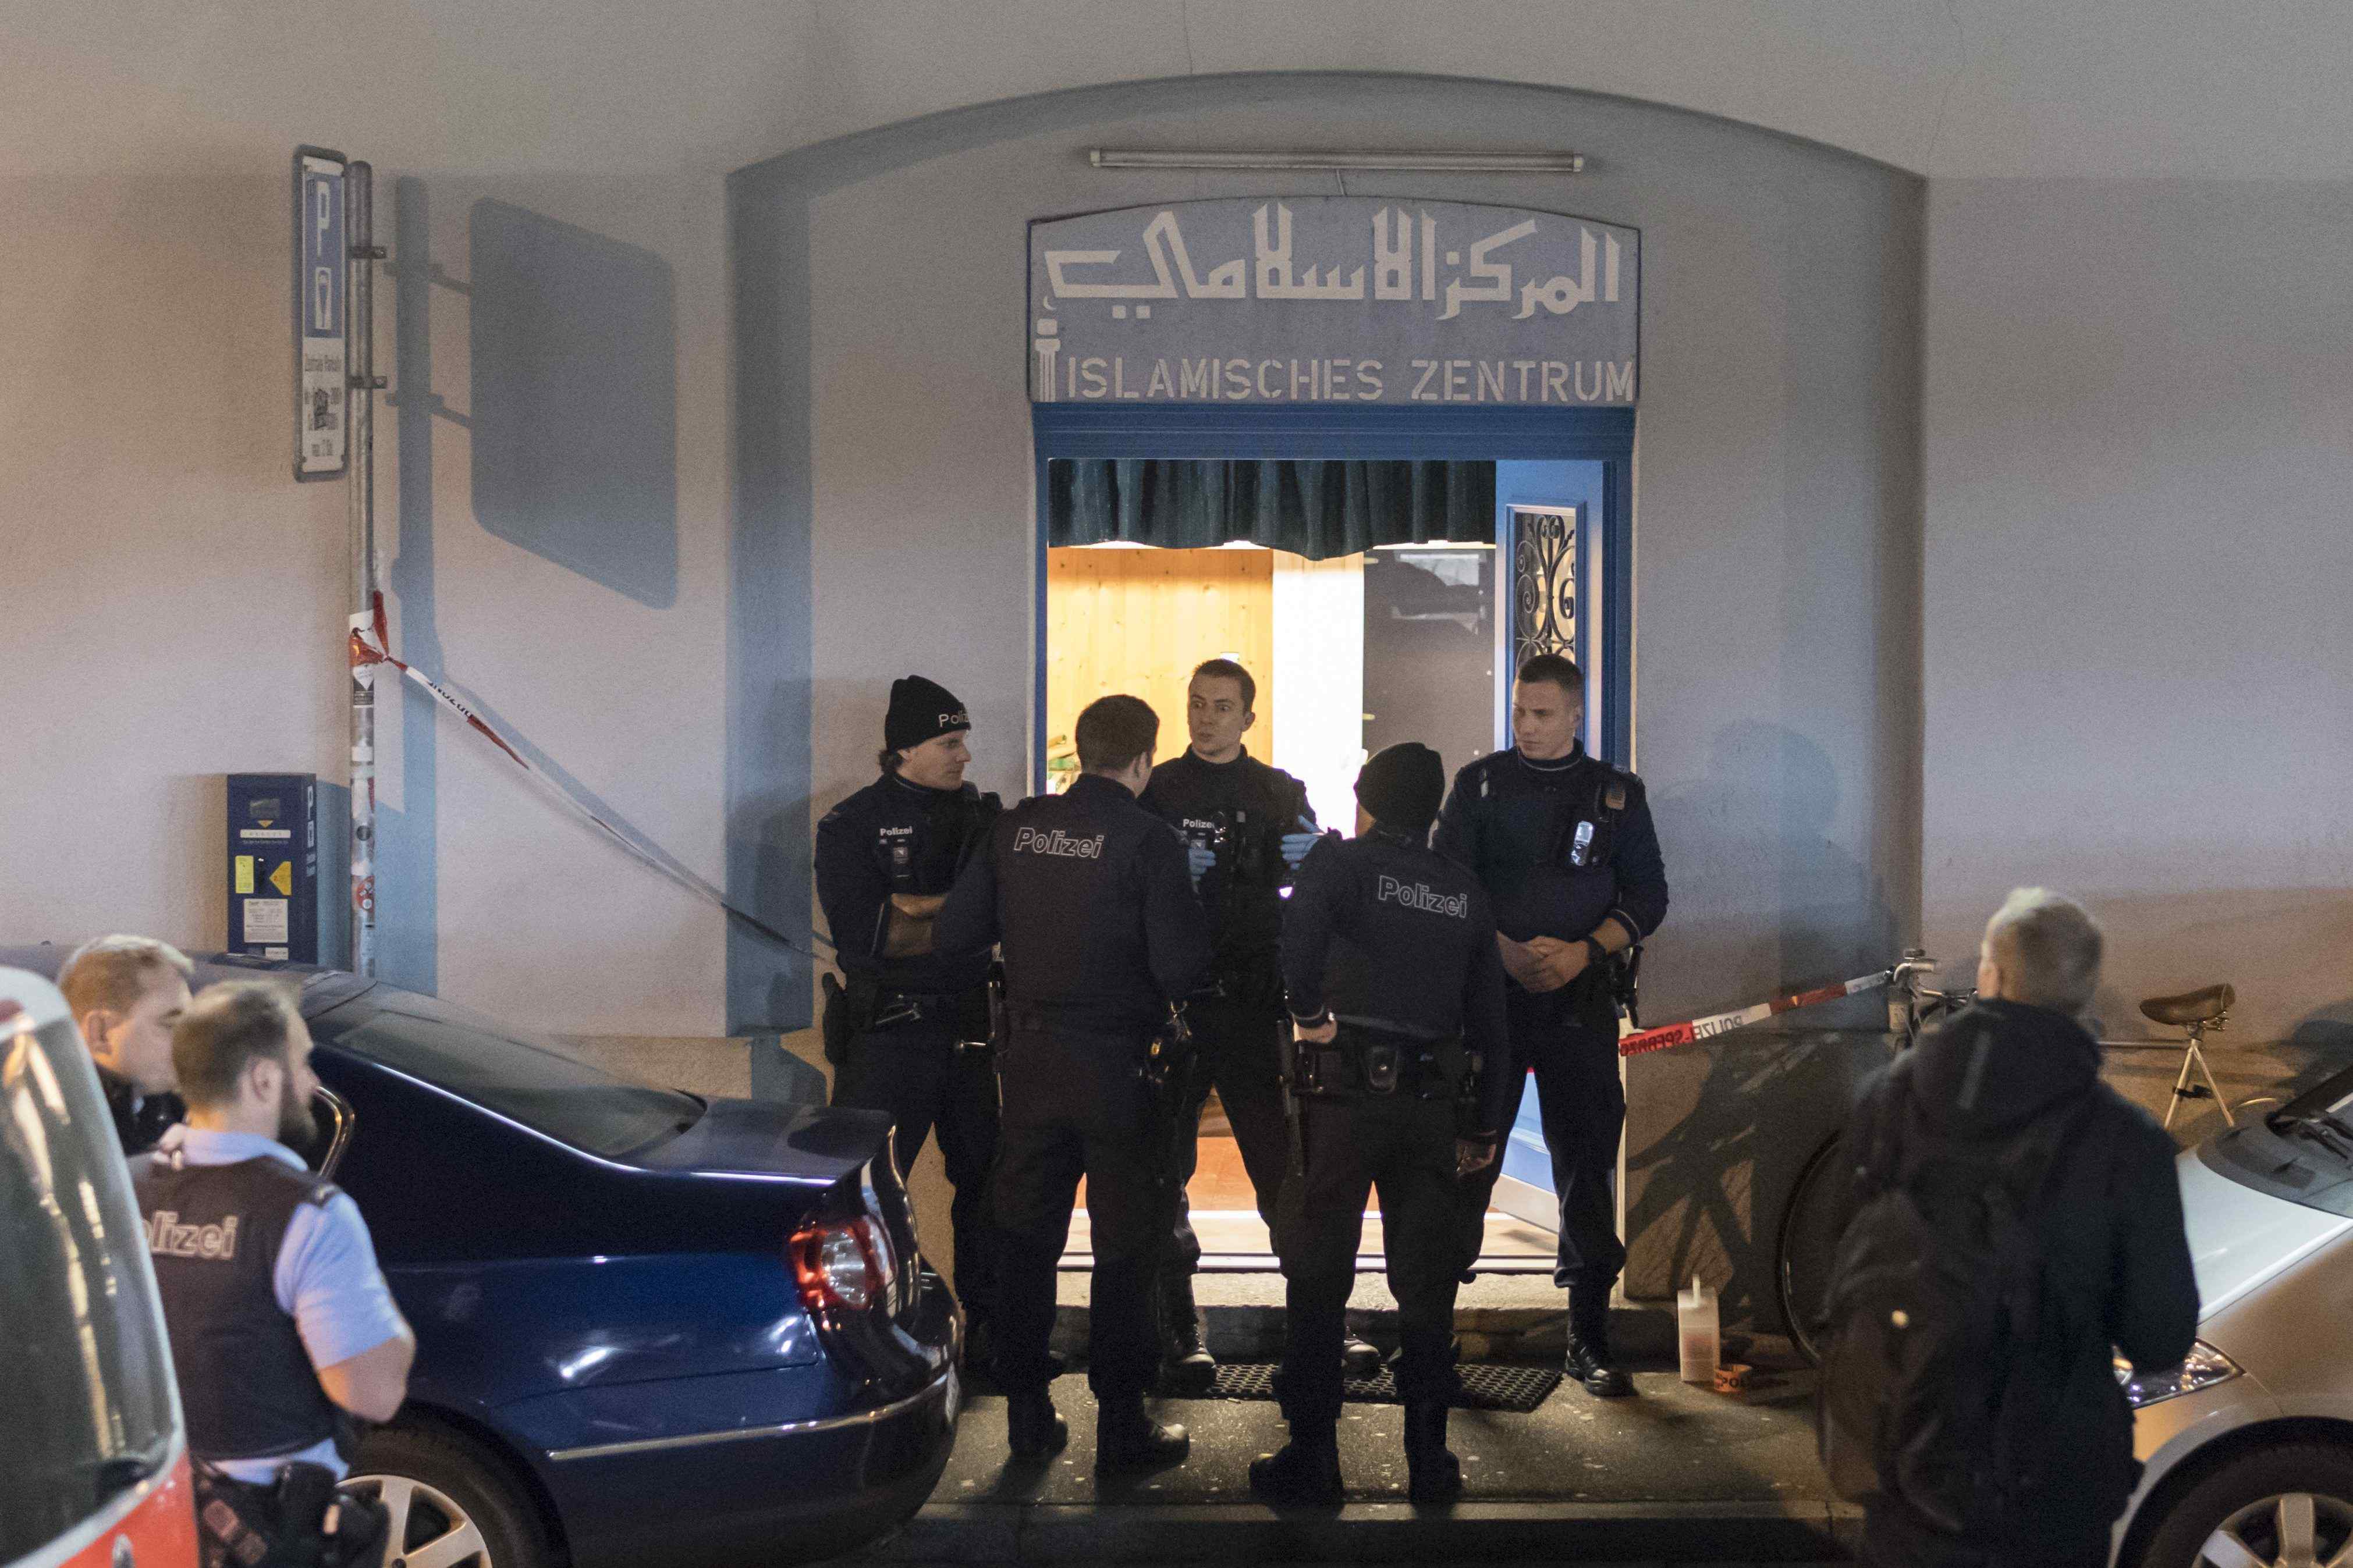 Tres heridos por disparos en un centro de oración islámico en Zurich